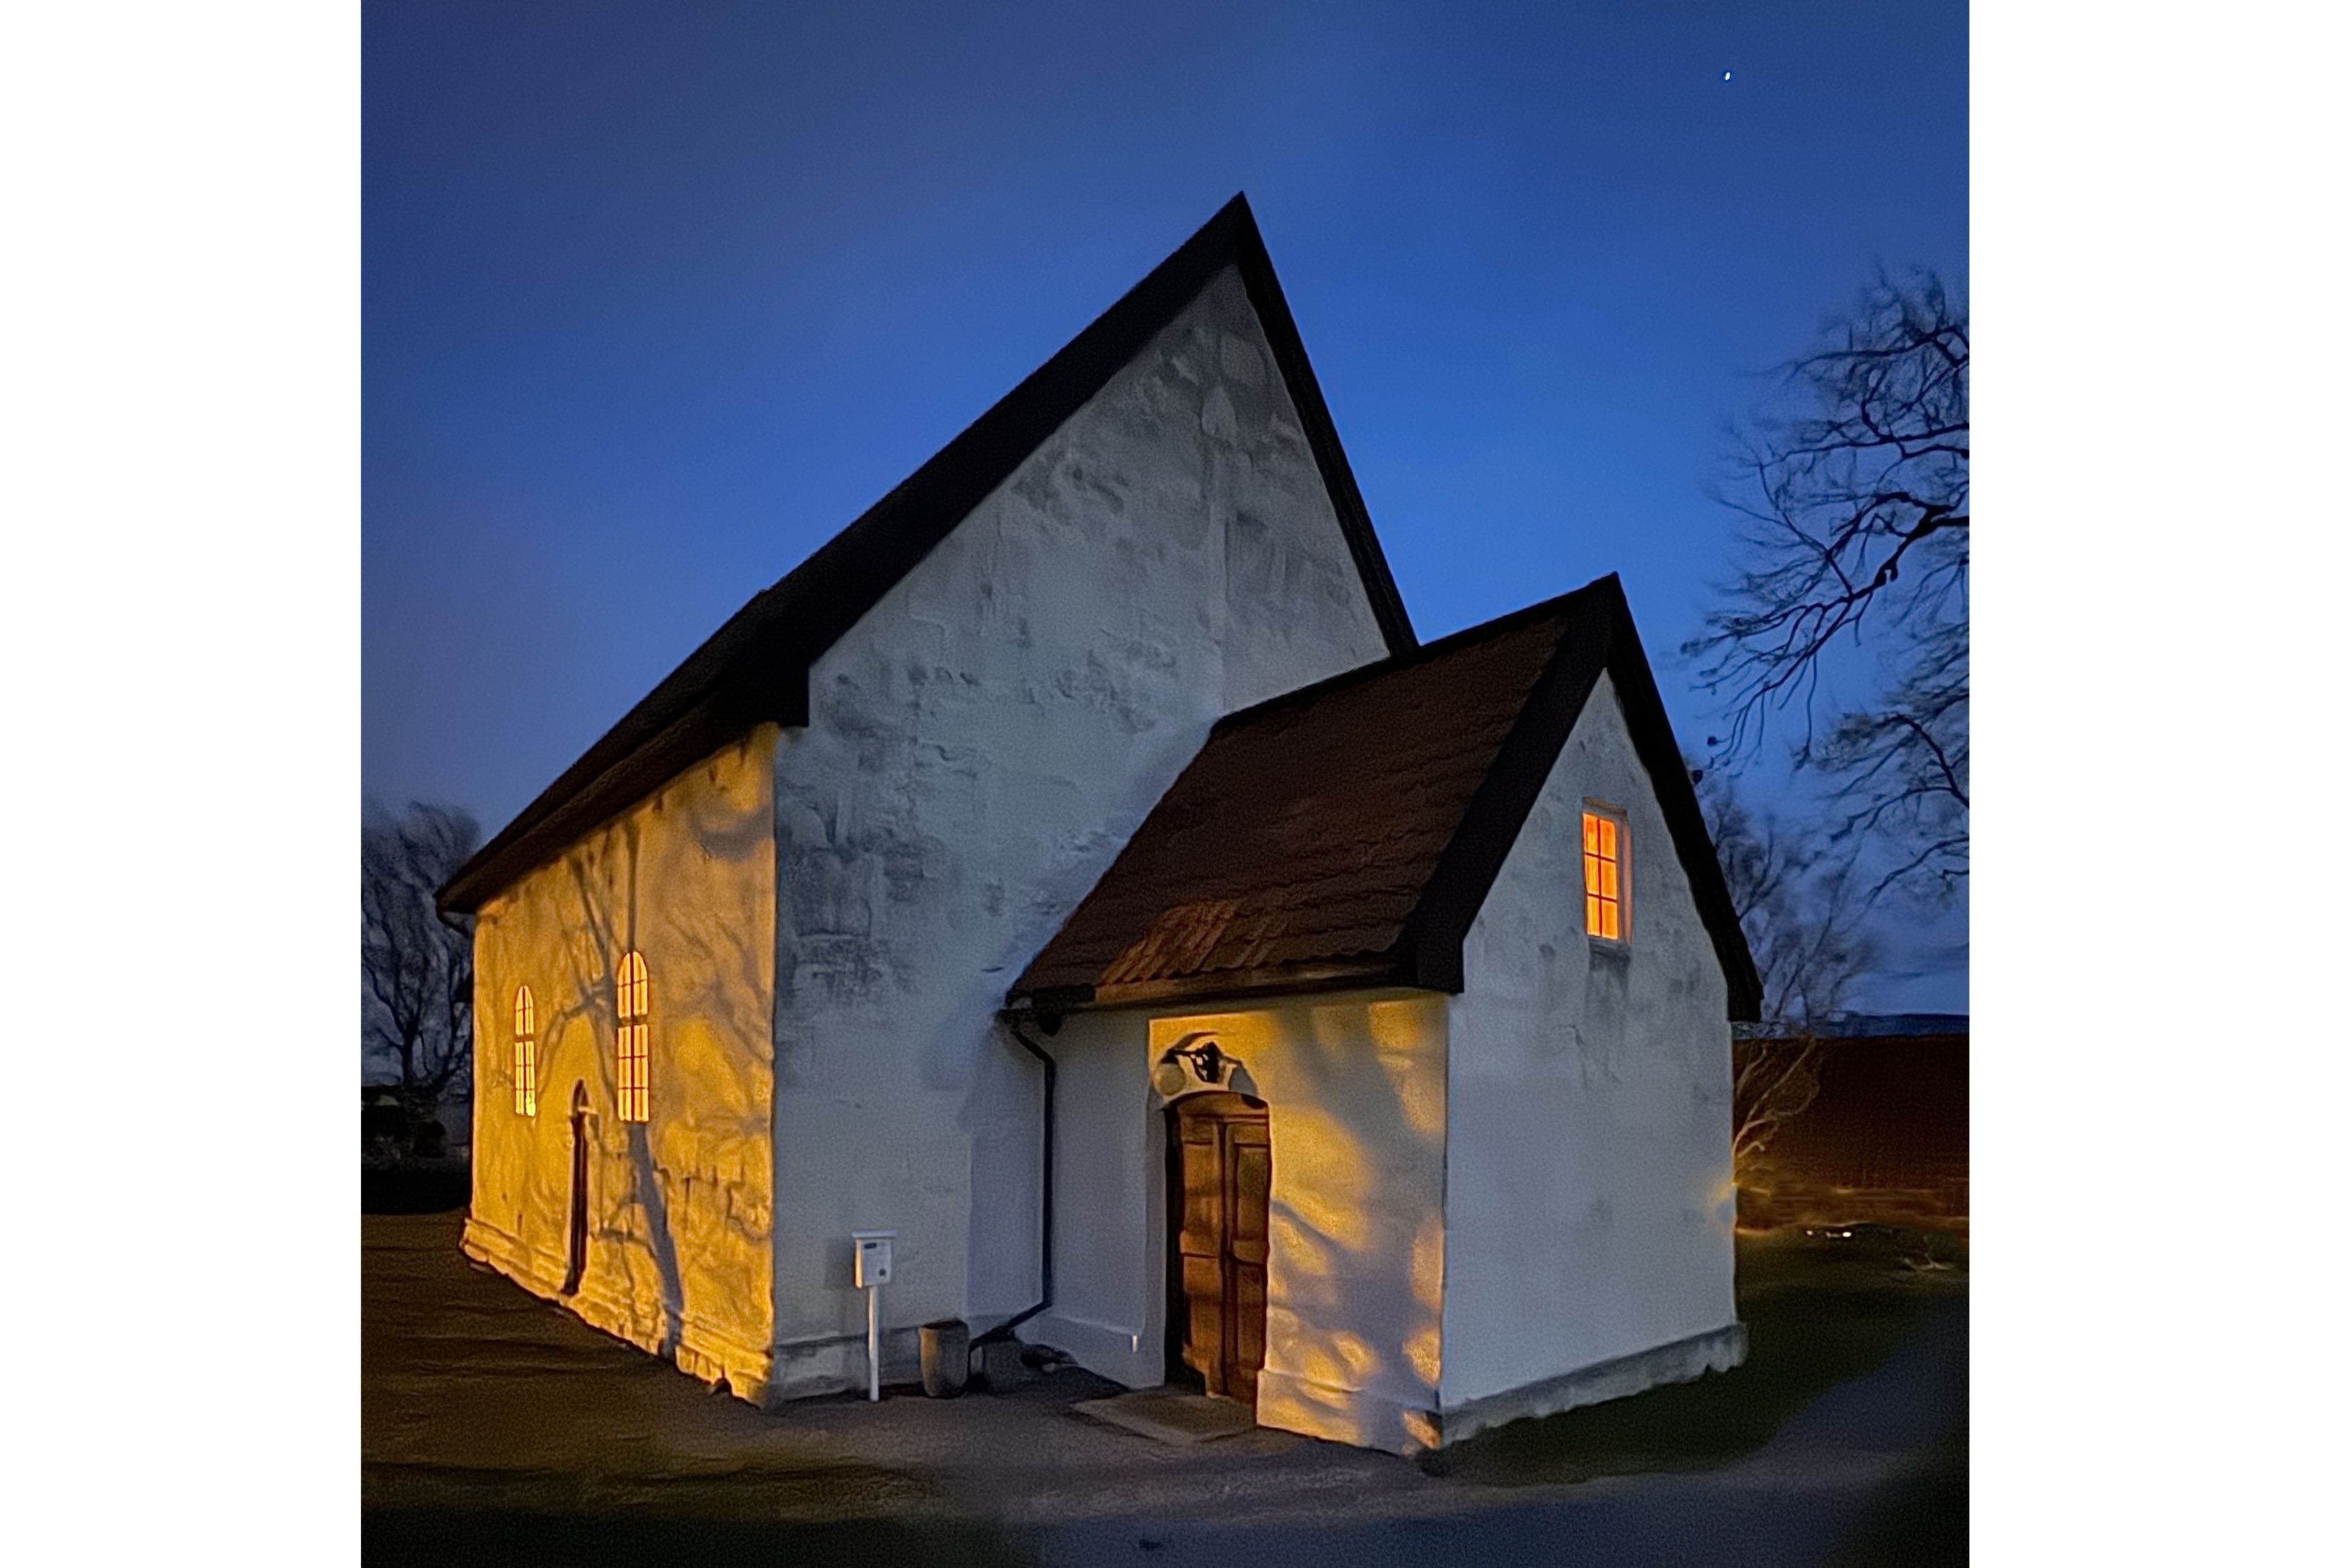 Giske kyrkje fra 1130 er trolig den eldste kirken i Møre. Kirken er i marmor og er bygget i romansk stil med rundbude dører og vinduer. Foto: Svein Magne Harnes 